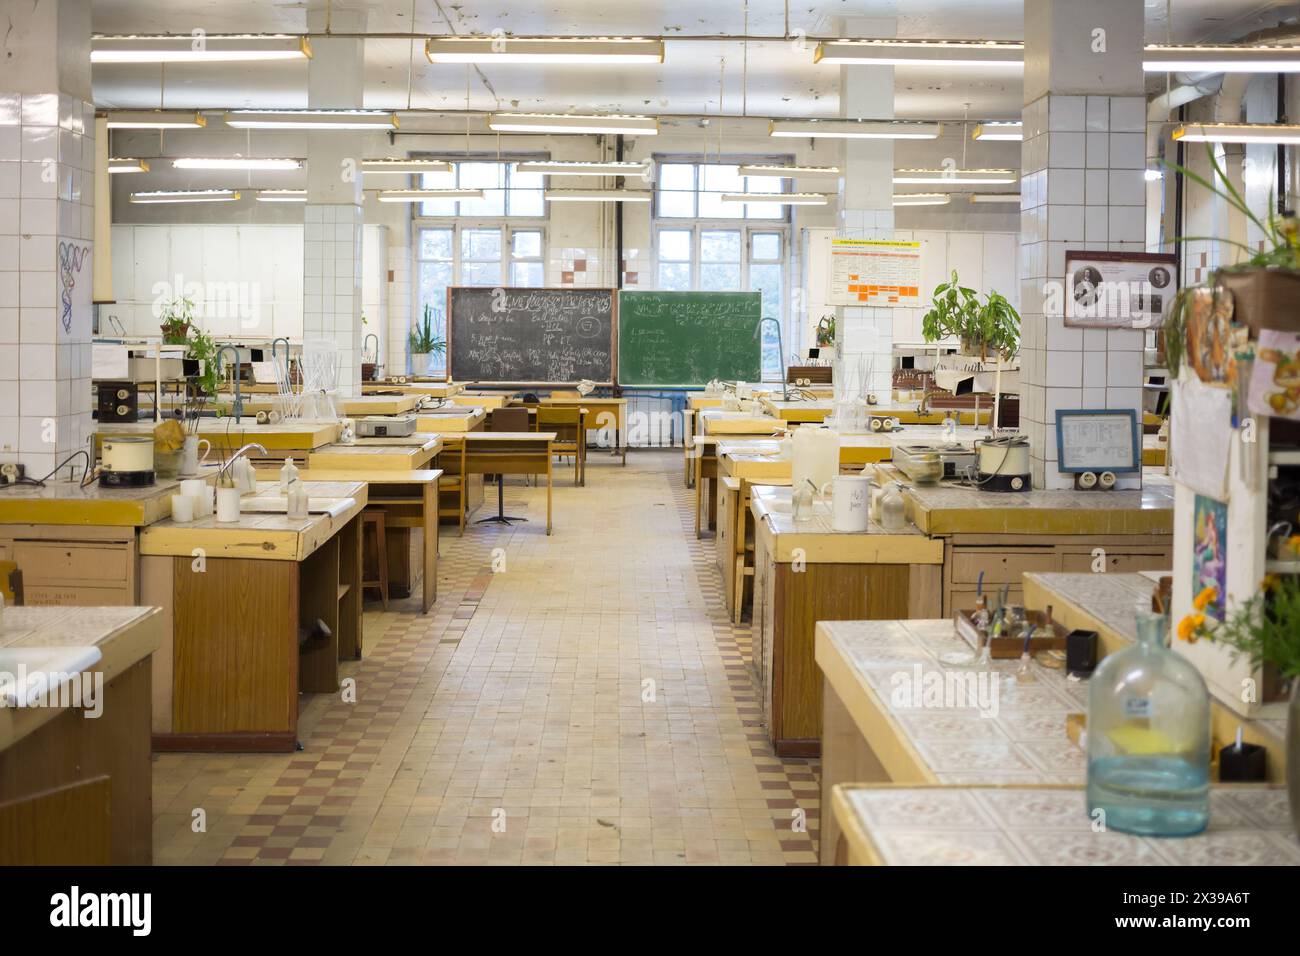 RUSSIE, MOSCOU - 12 septembre, 2015 : laboratoire avec de nombreux lieux de travail et bureaux à l'Université de technologie chimique D. Mendeleyev. Banque D'Images